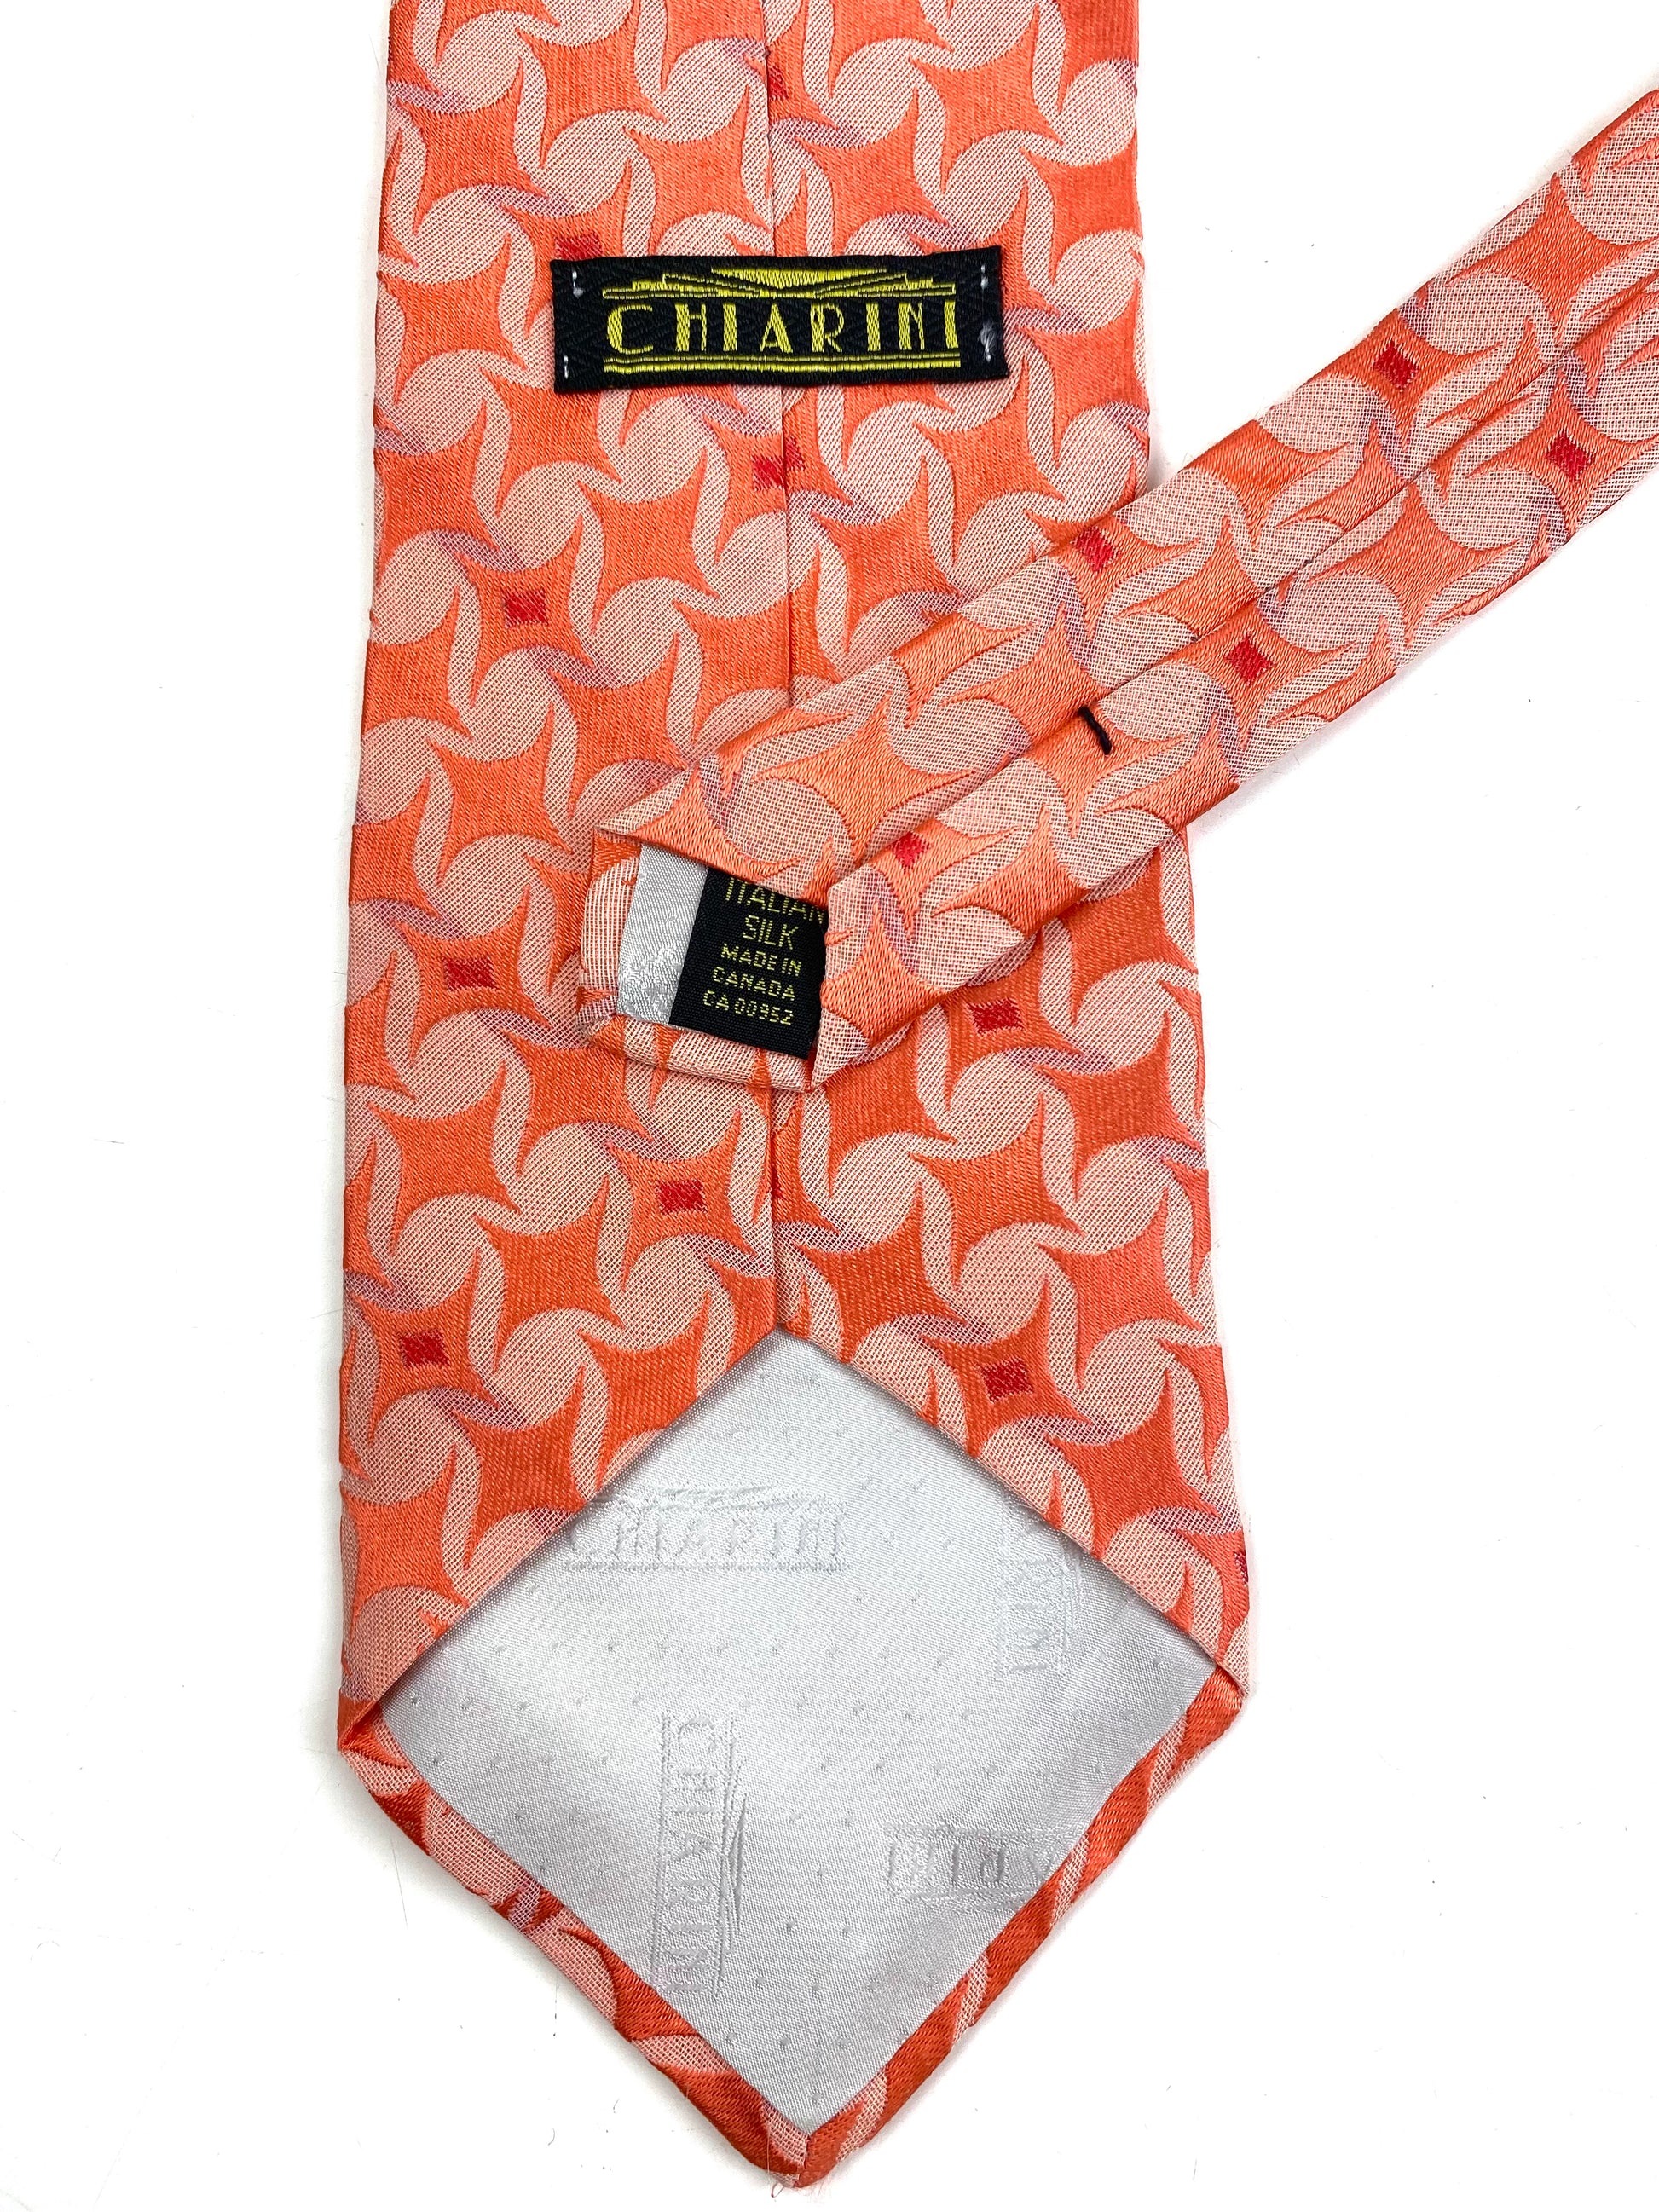 Back and labels: 90s Deadstock Silk Necktie, Men's Vintage Peach Colour Geometric Pattern Tie, NOS